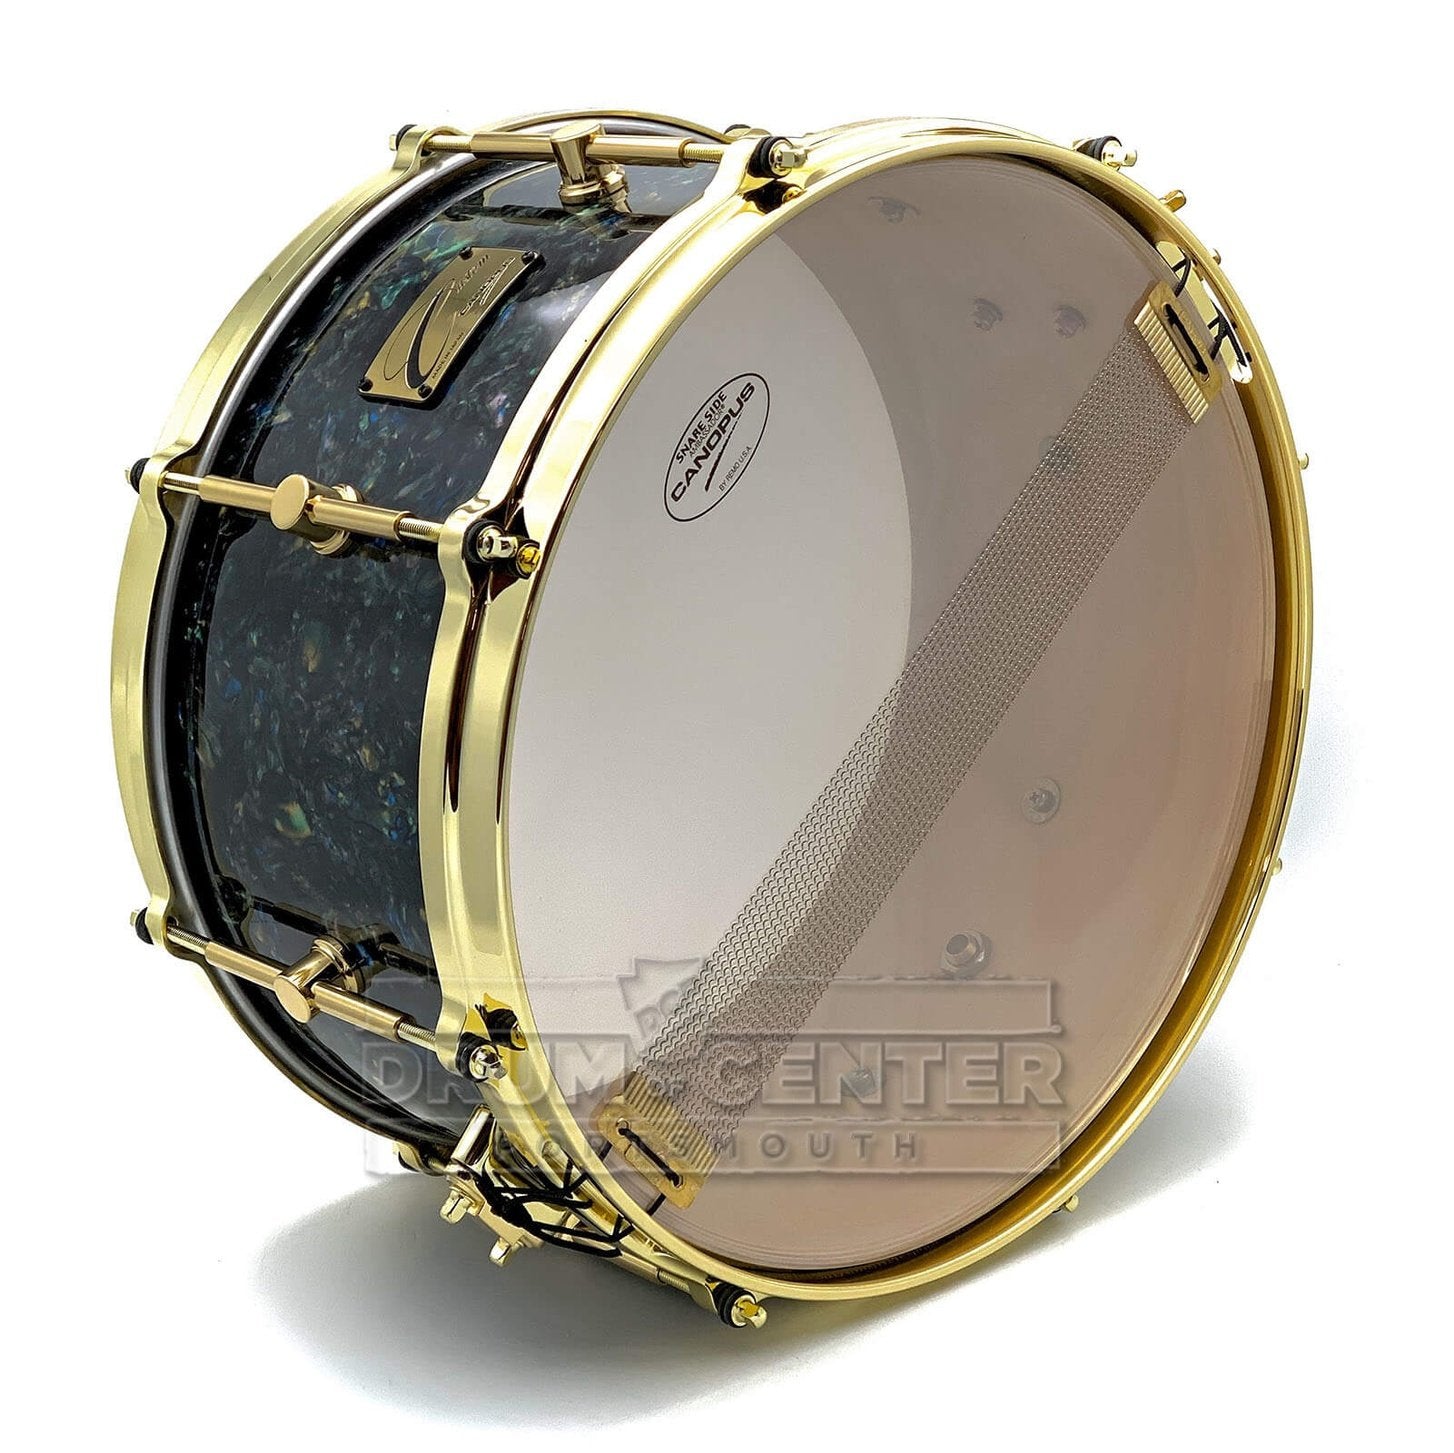 Birch Snare Drum - Canopus Drums